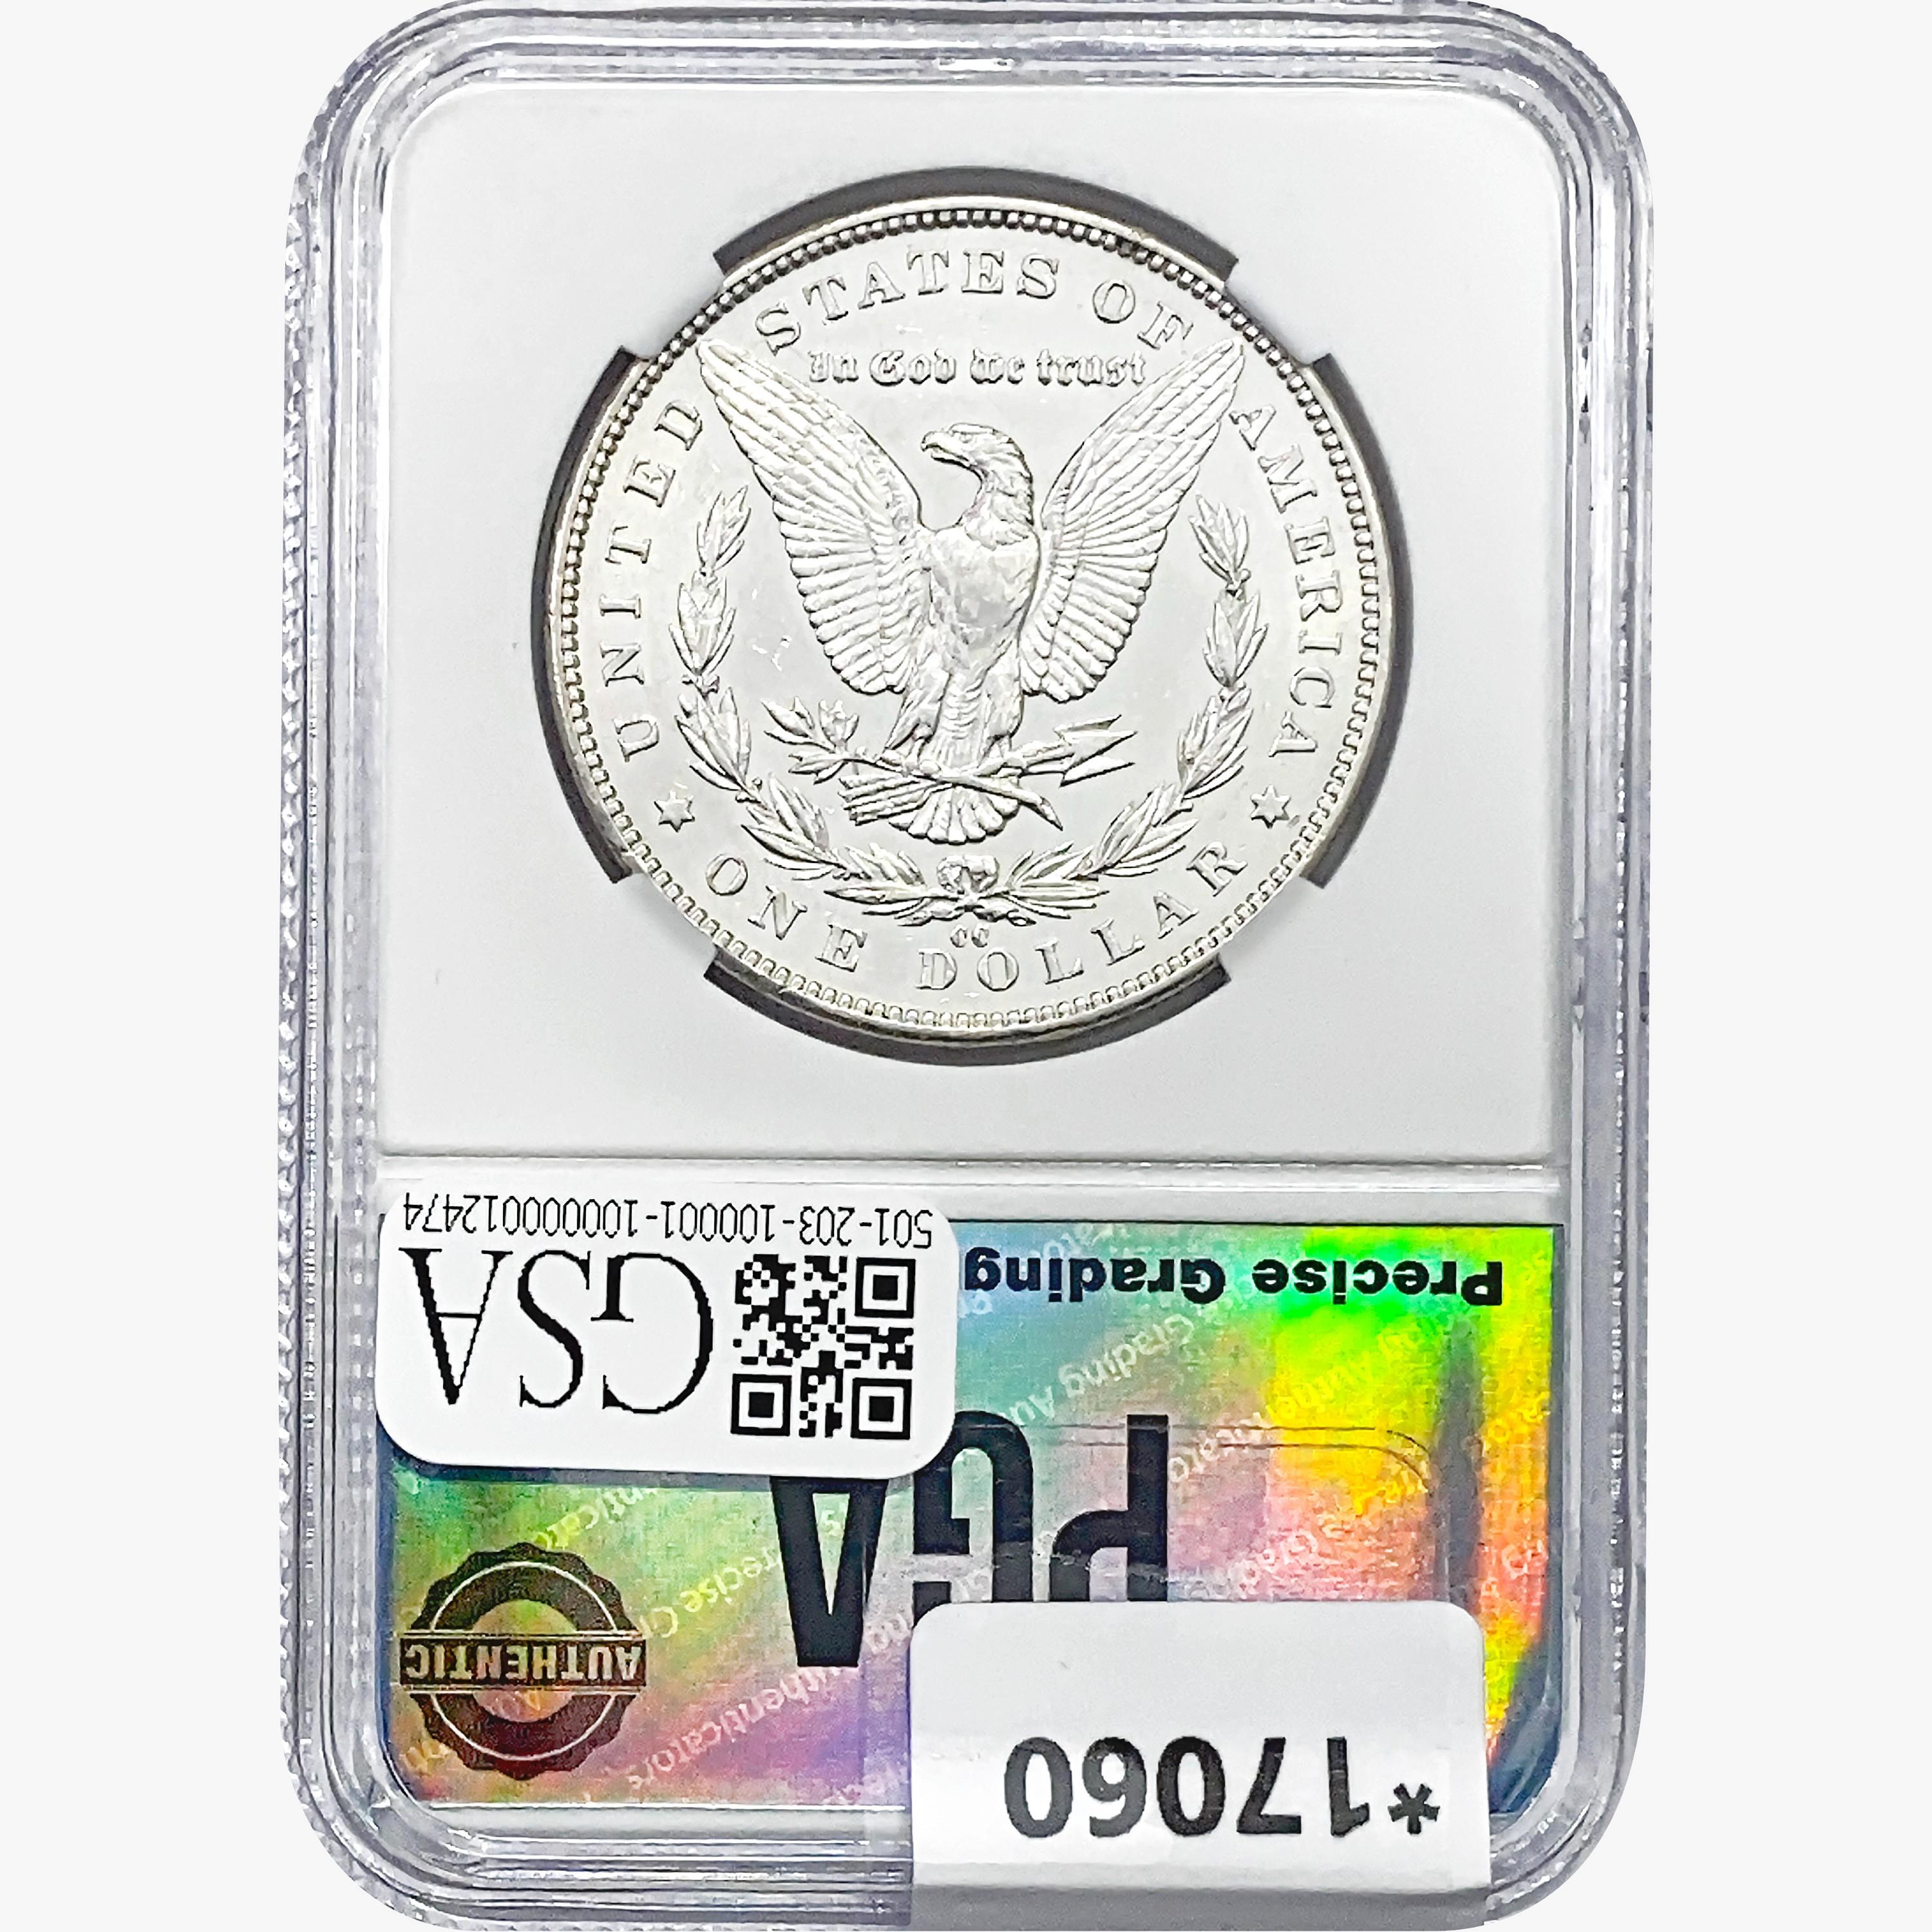 1891-CC Morgan Silver Dollar PGA MS64